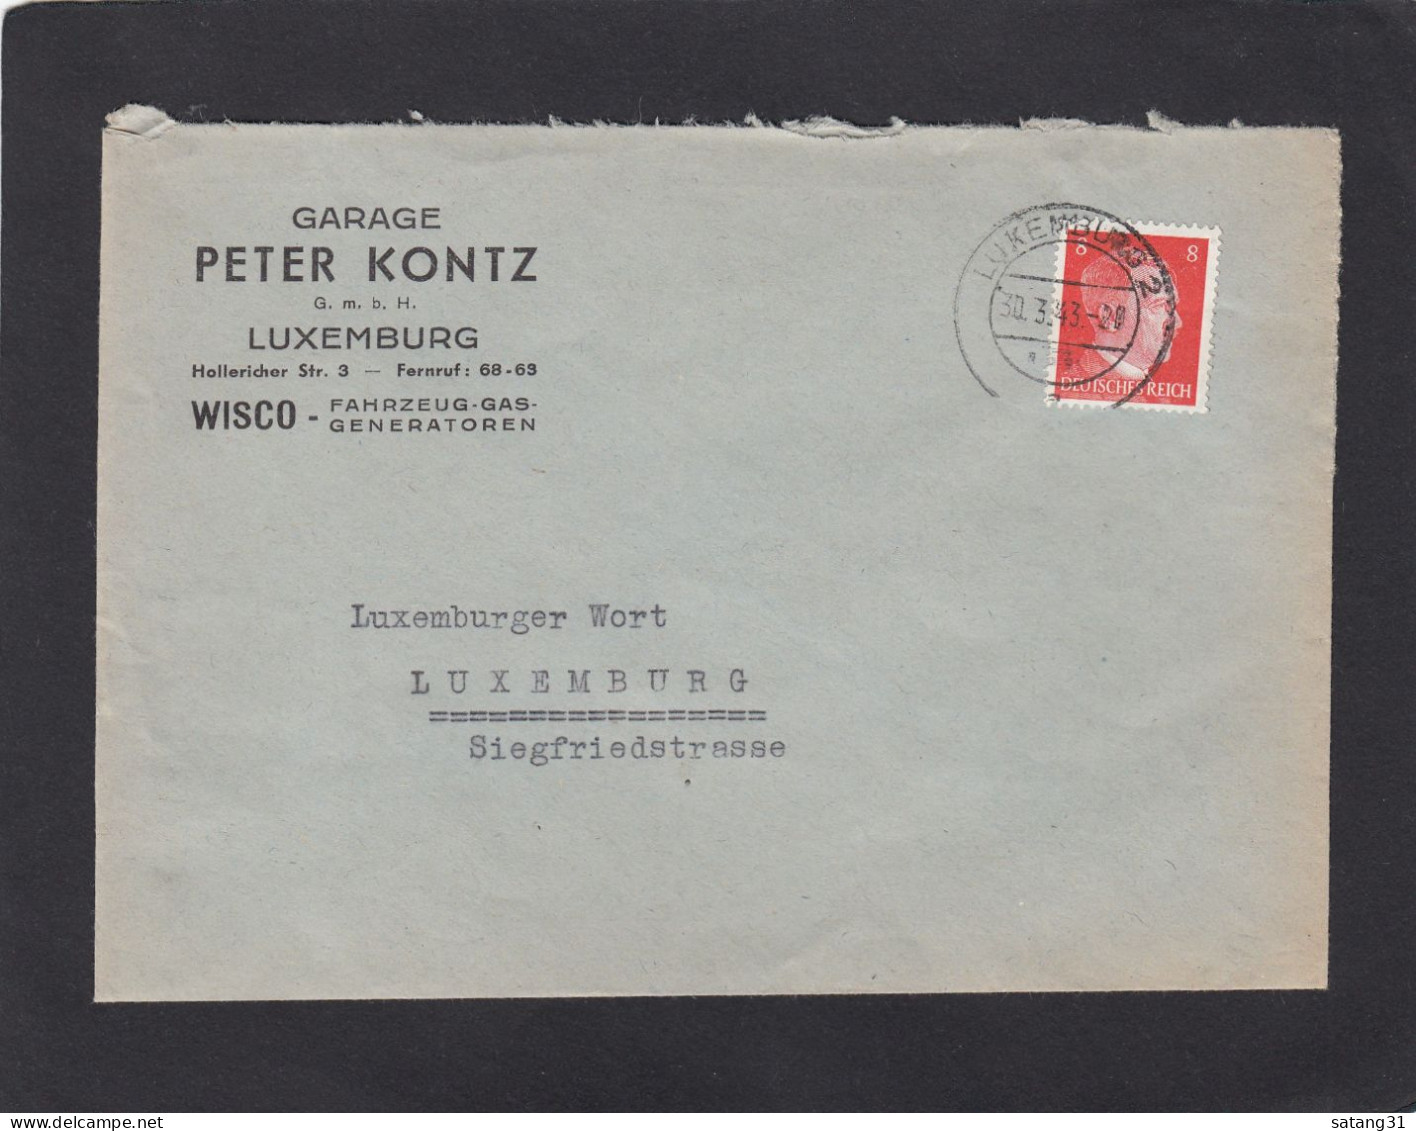 GARAGE PETER KONTZ G.M.B.H., LUXEMBURG. WISCO - FAHRZEUG-GAS-GENERATOREN. - 1940-1944 Occupazione Tedesca